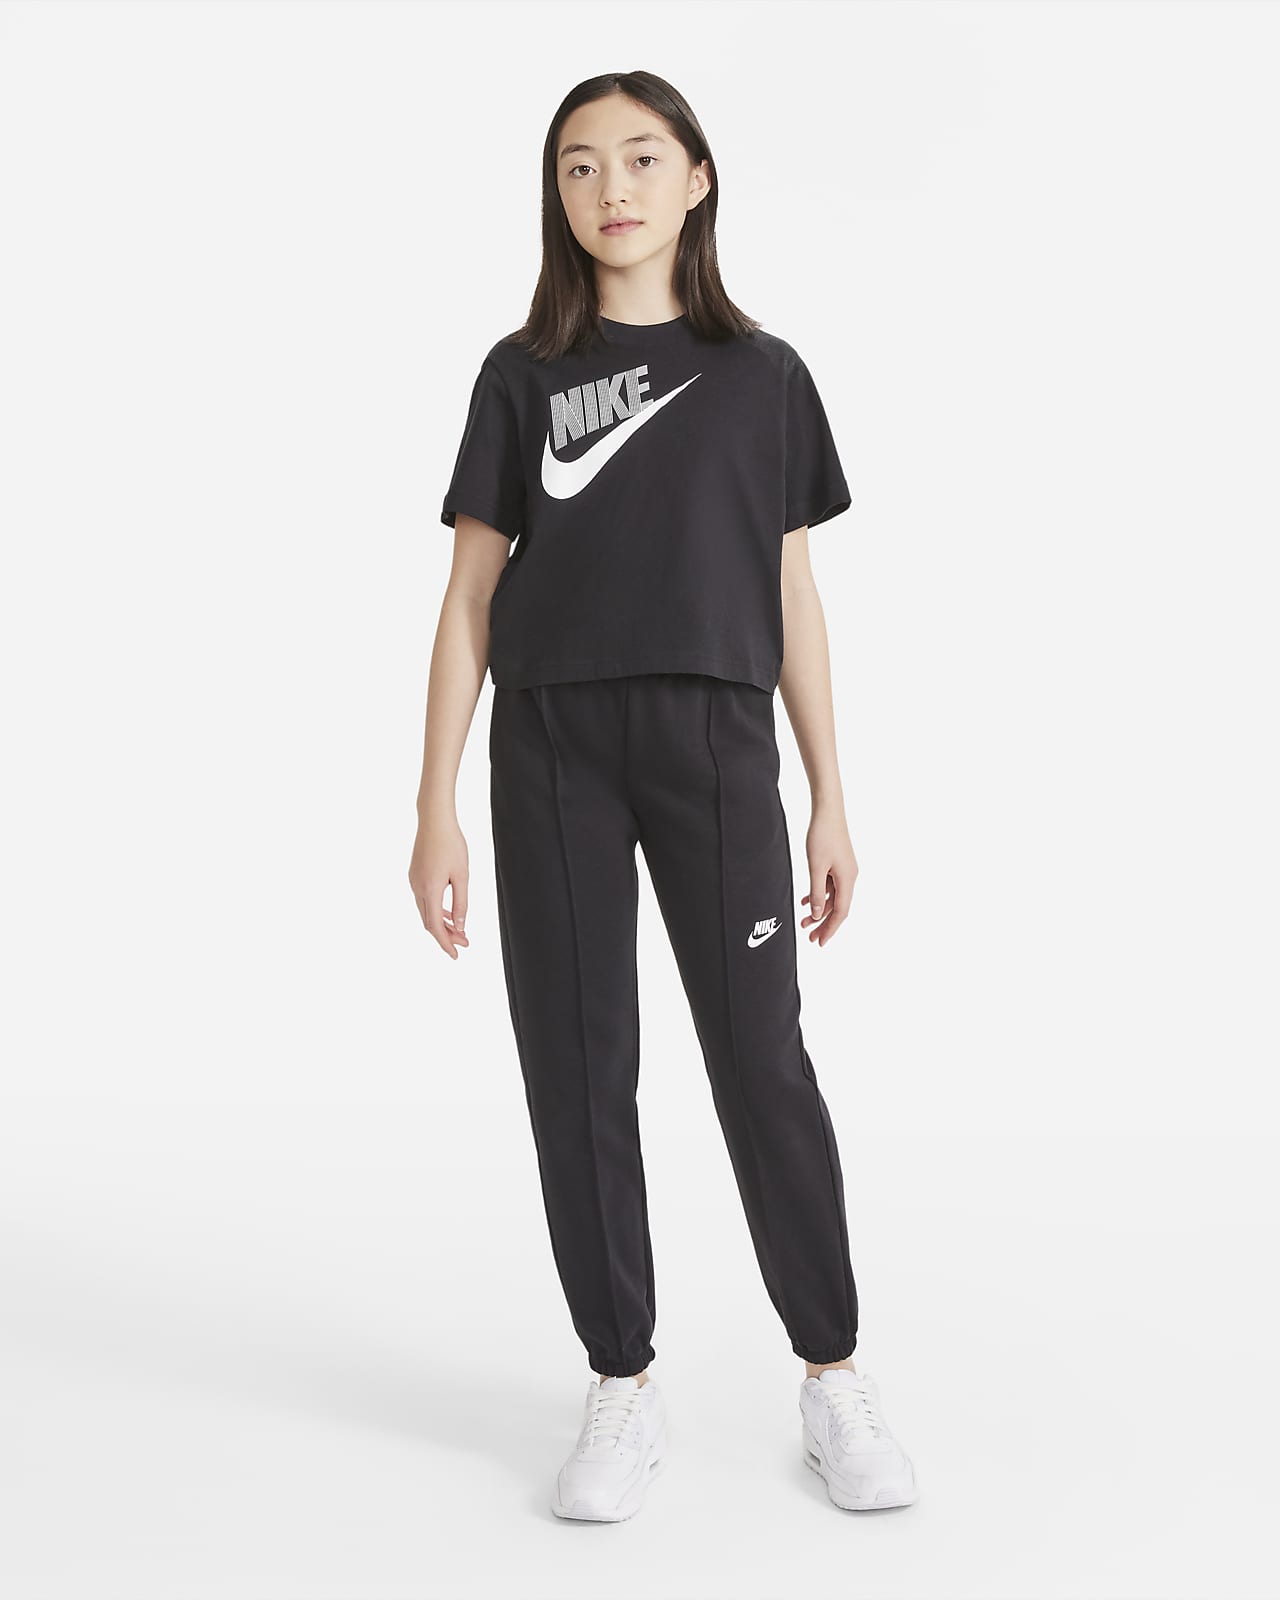 Nike Sportswear Club Big Girls French Terry Pants - Macy's